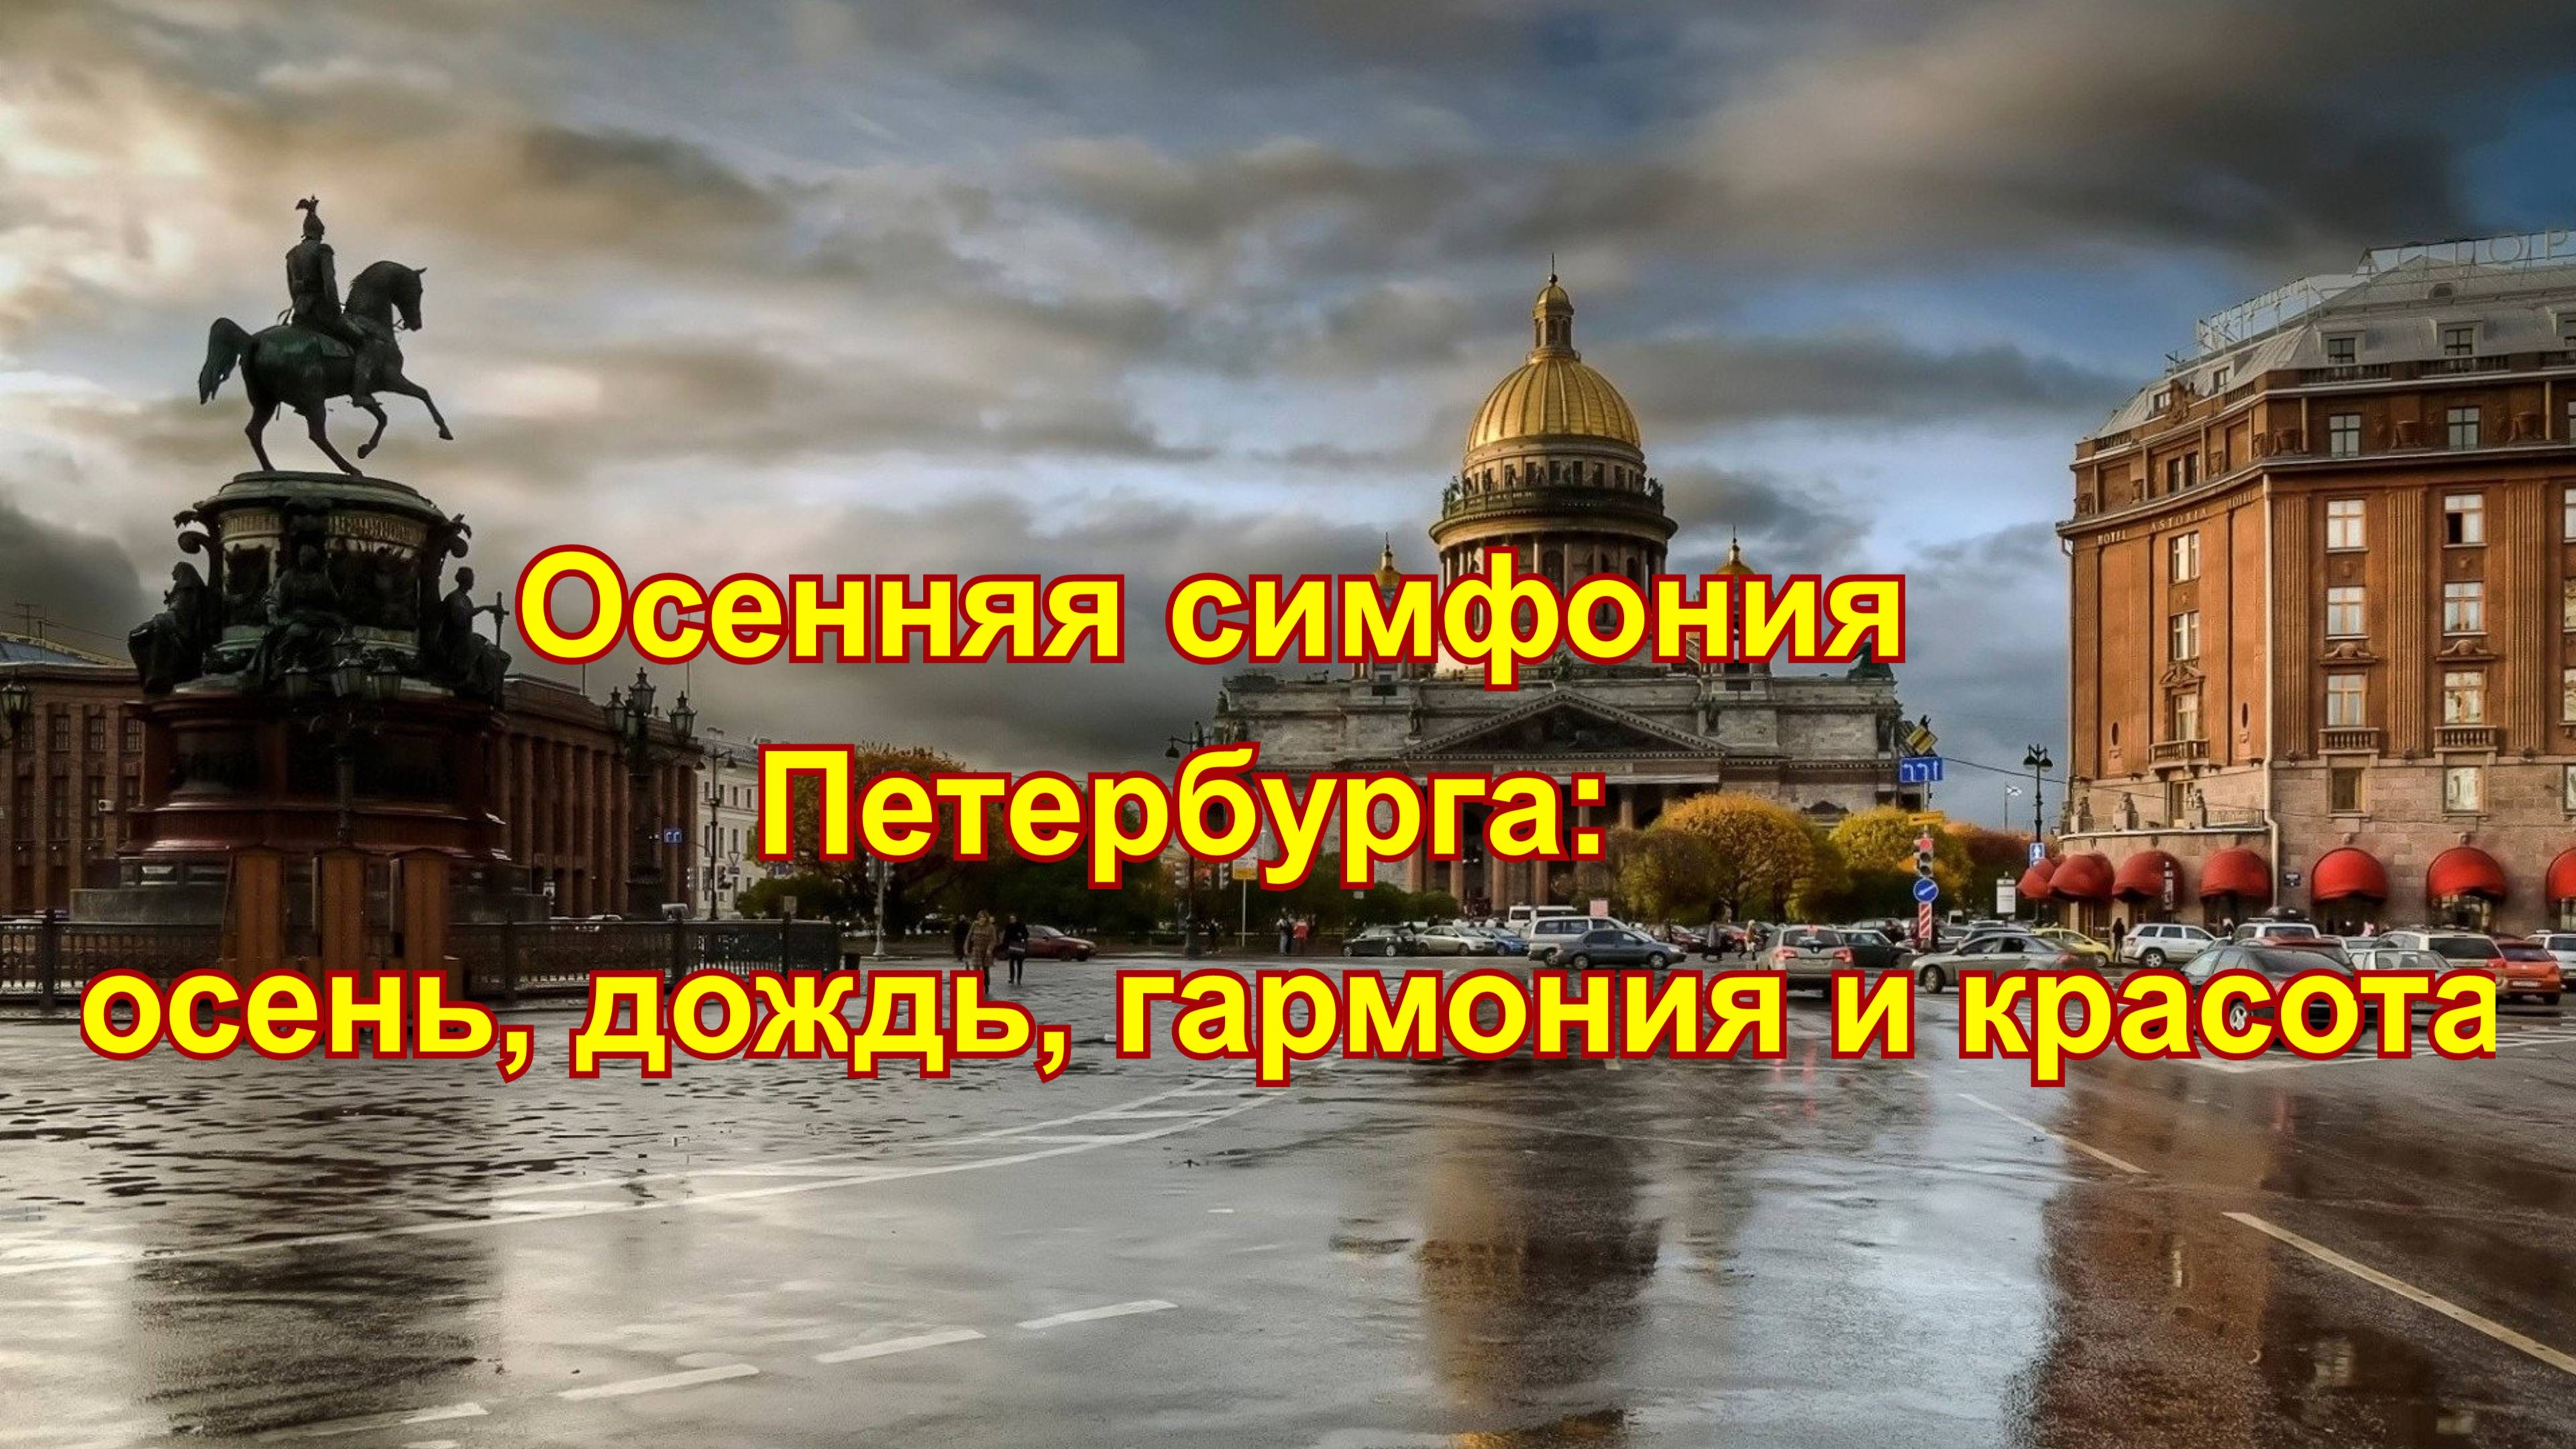 Осенняя симфония Санкт-Петербурга: дождь, гармония и красота